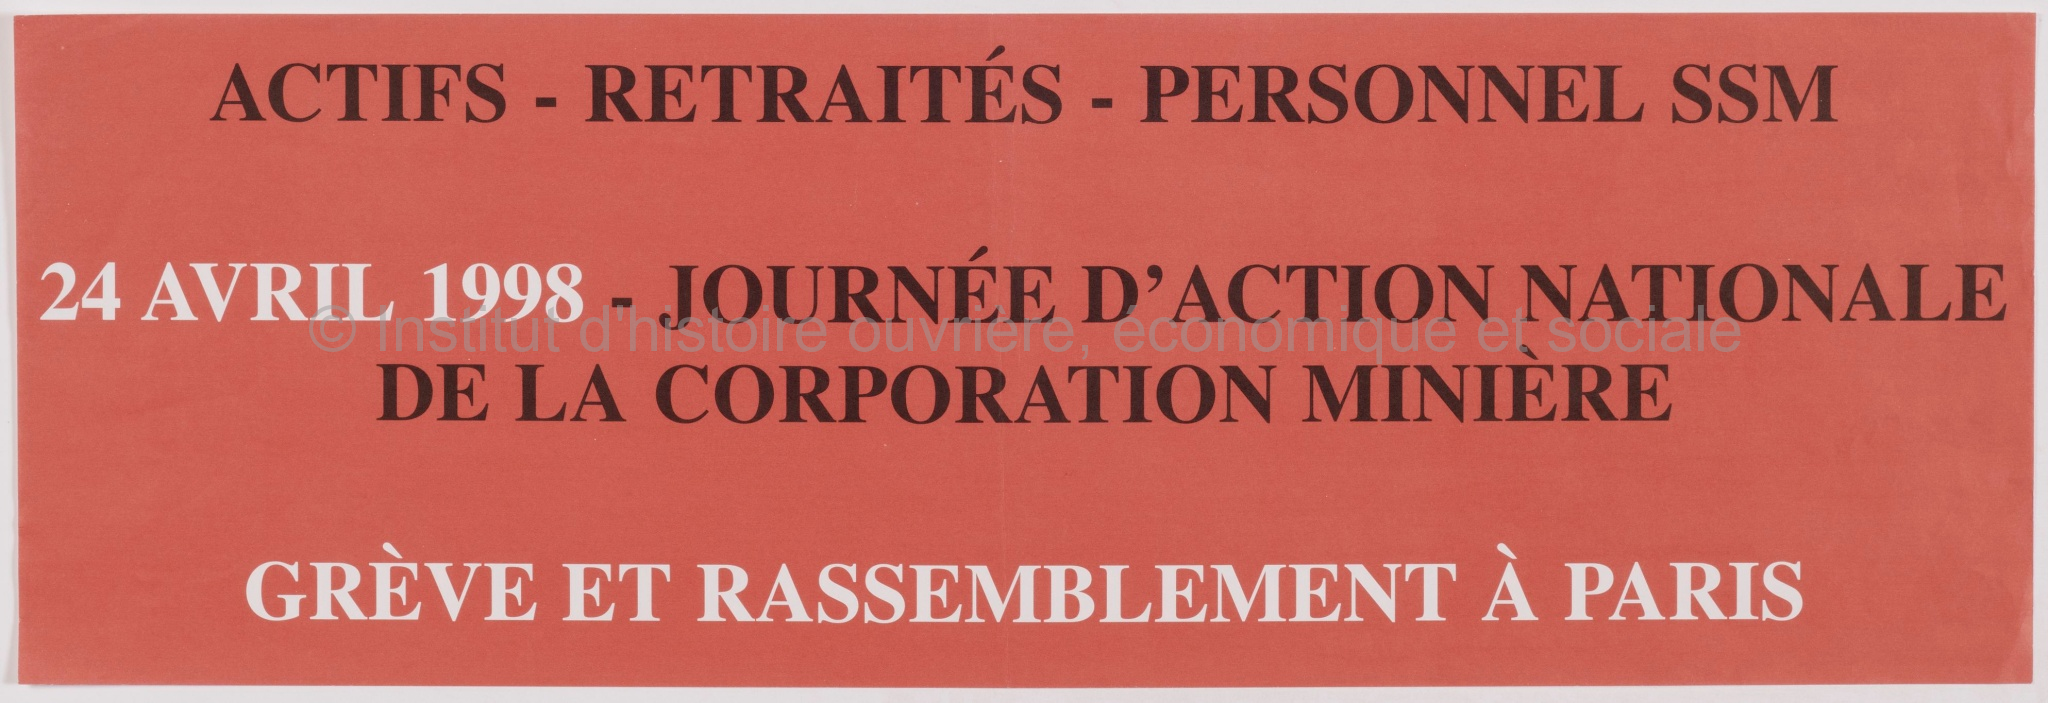 24 avril 1998 - Journée d'action nationale de la corporation minière : grève et rassemblement à Paris